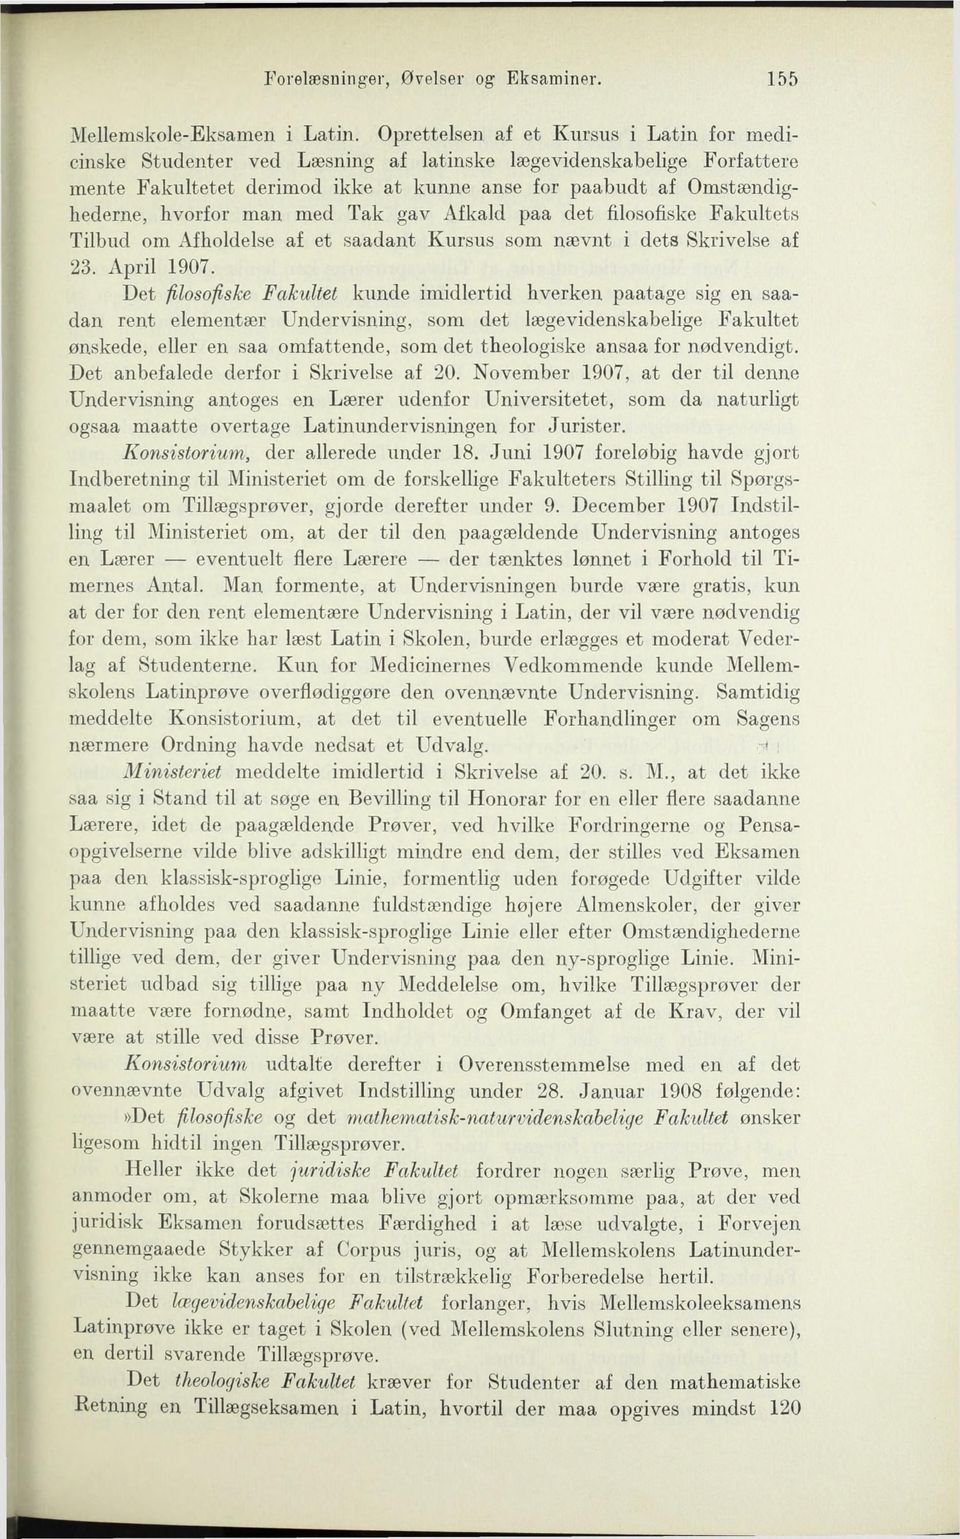 man med Tak gav Afkald paa det filosofiske Fakultets Tilbud om Afholdelse af et saadant Kursus som nævnt i dets Skrivelse af 23. April 1907.